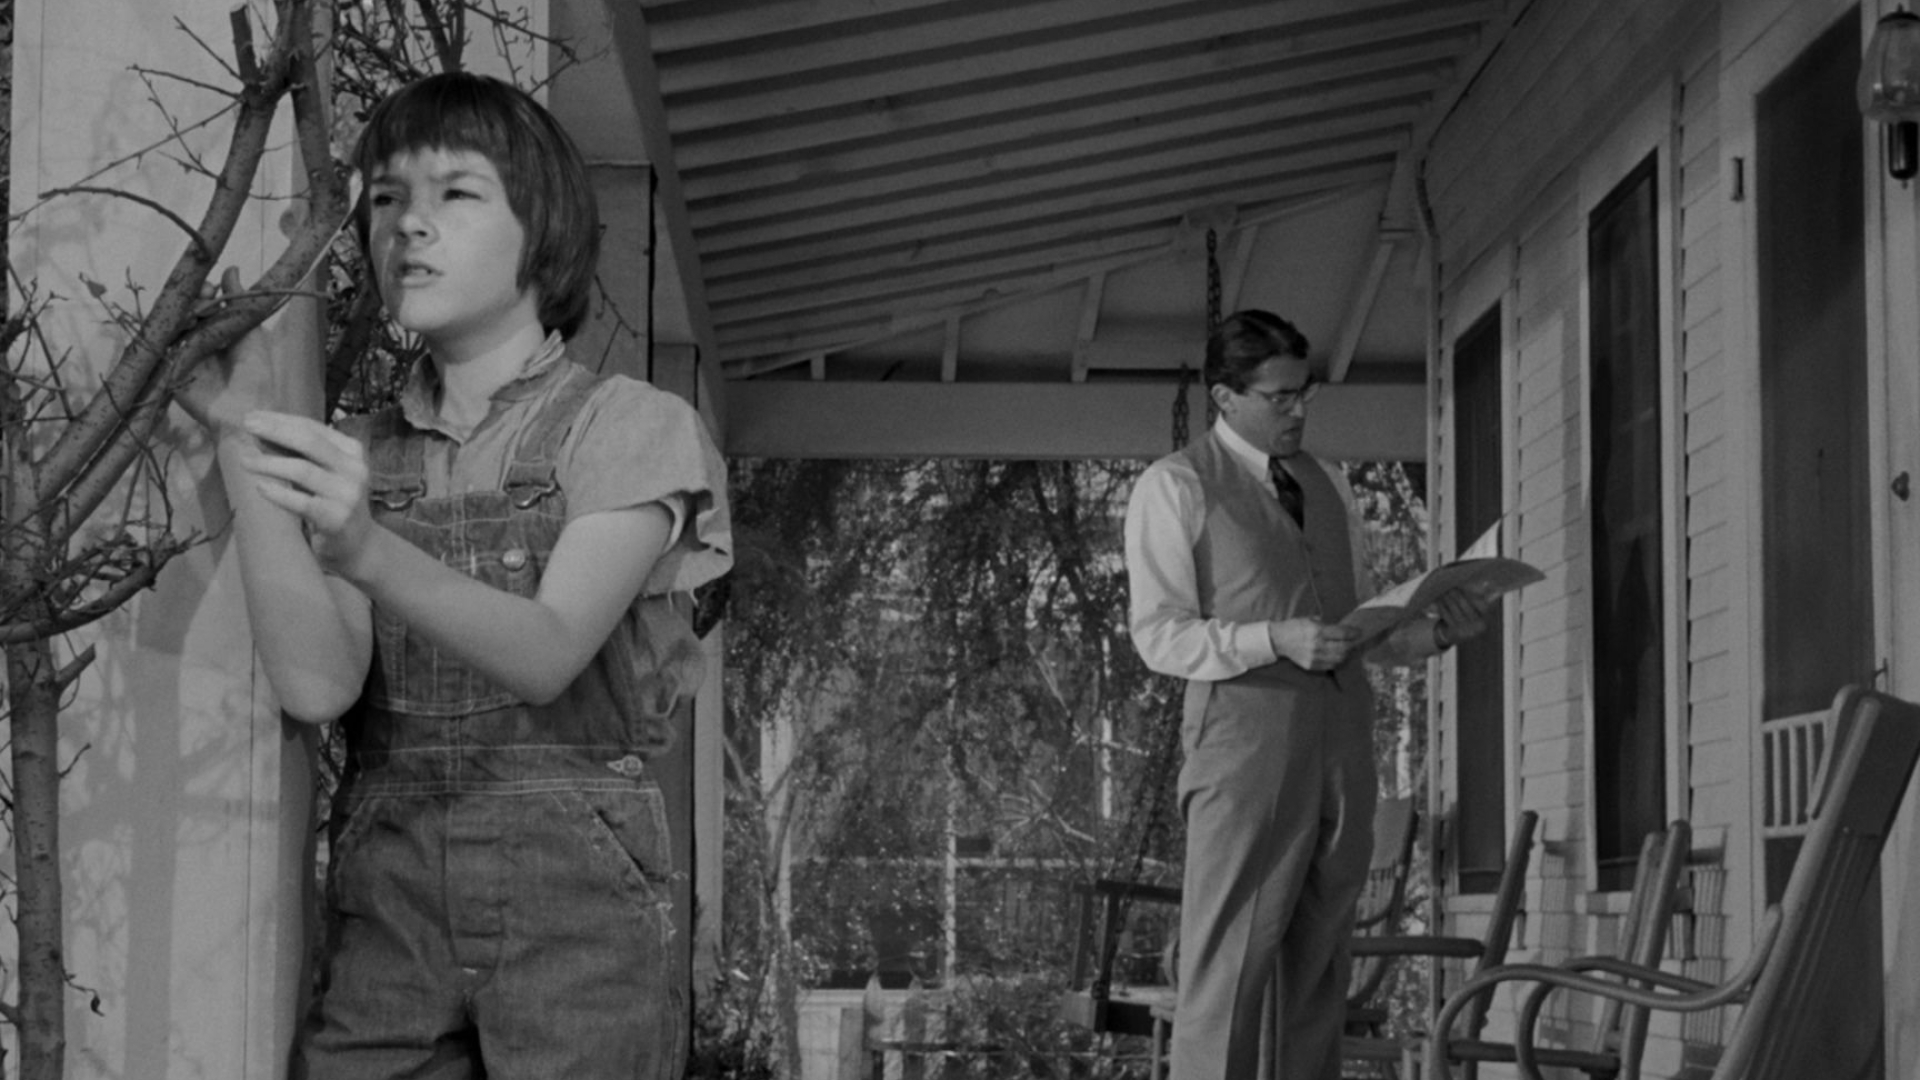 1920x1080 To Kill a Mockingbird (1962) | HD Windows Wallpapers | To kill a mockingbird, Kid character, 1960s movies